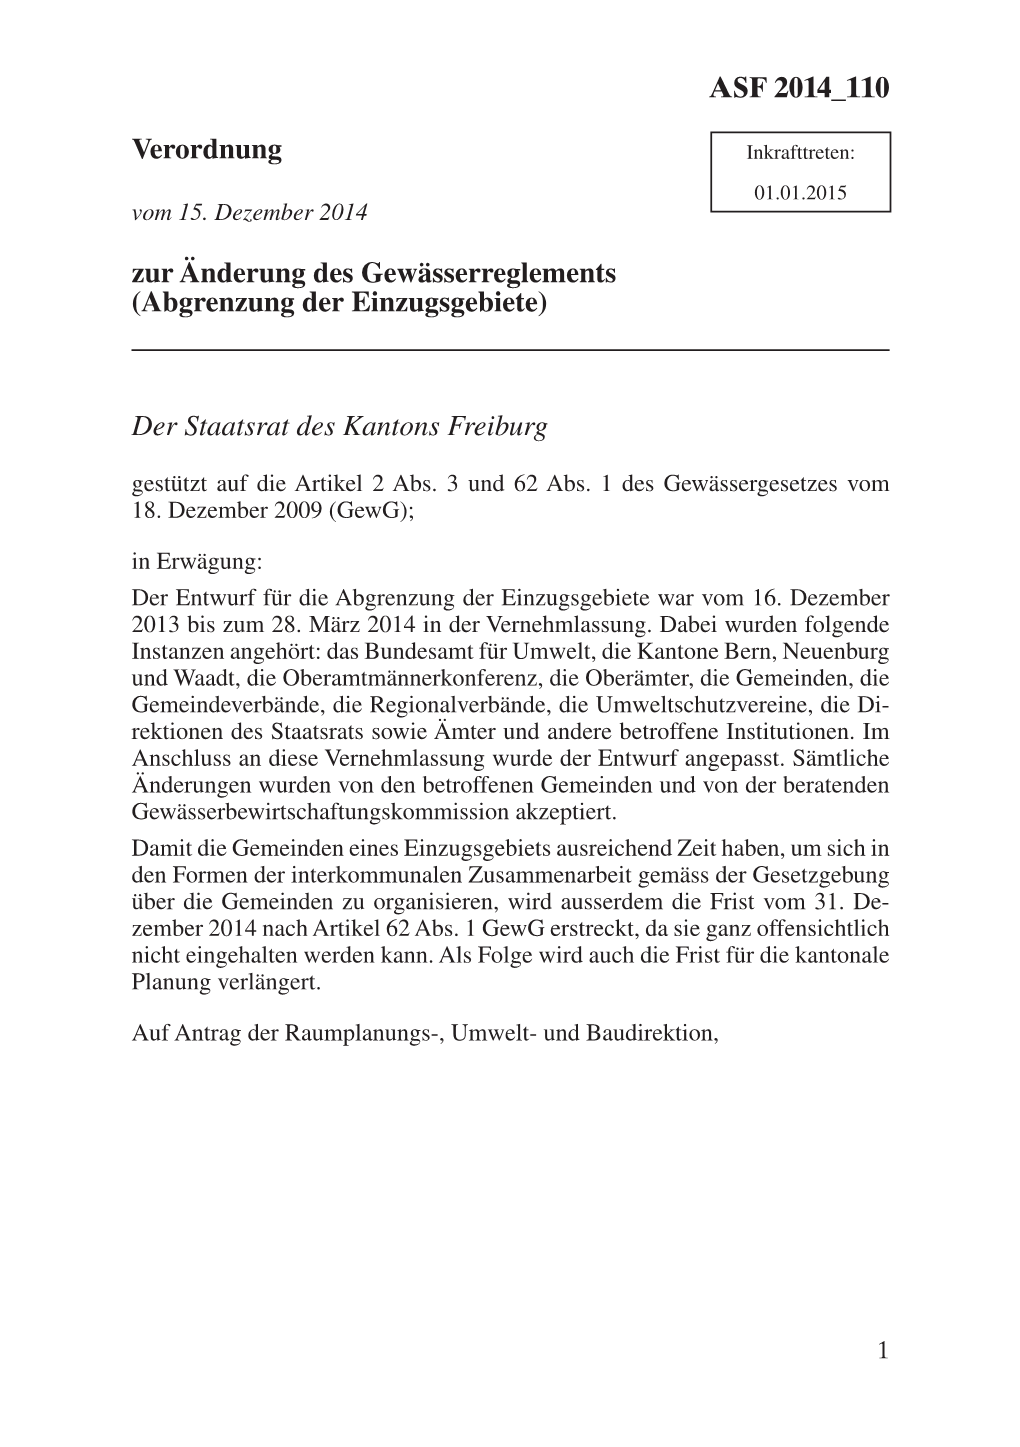 Der Staatsrat Des Kantons Freiburg Gestützt Auf Die Artikel 2 Abs